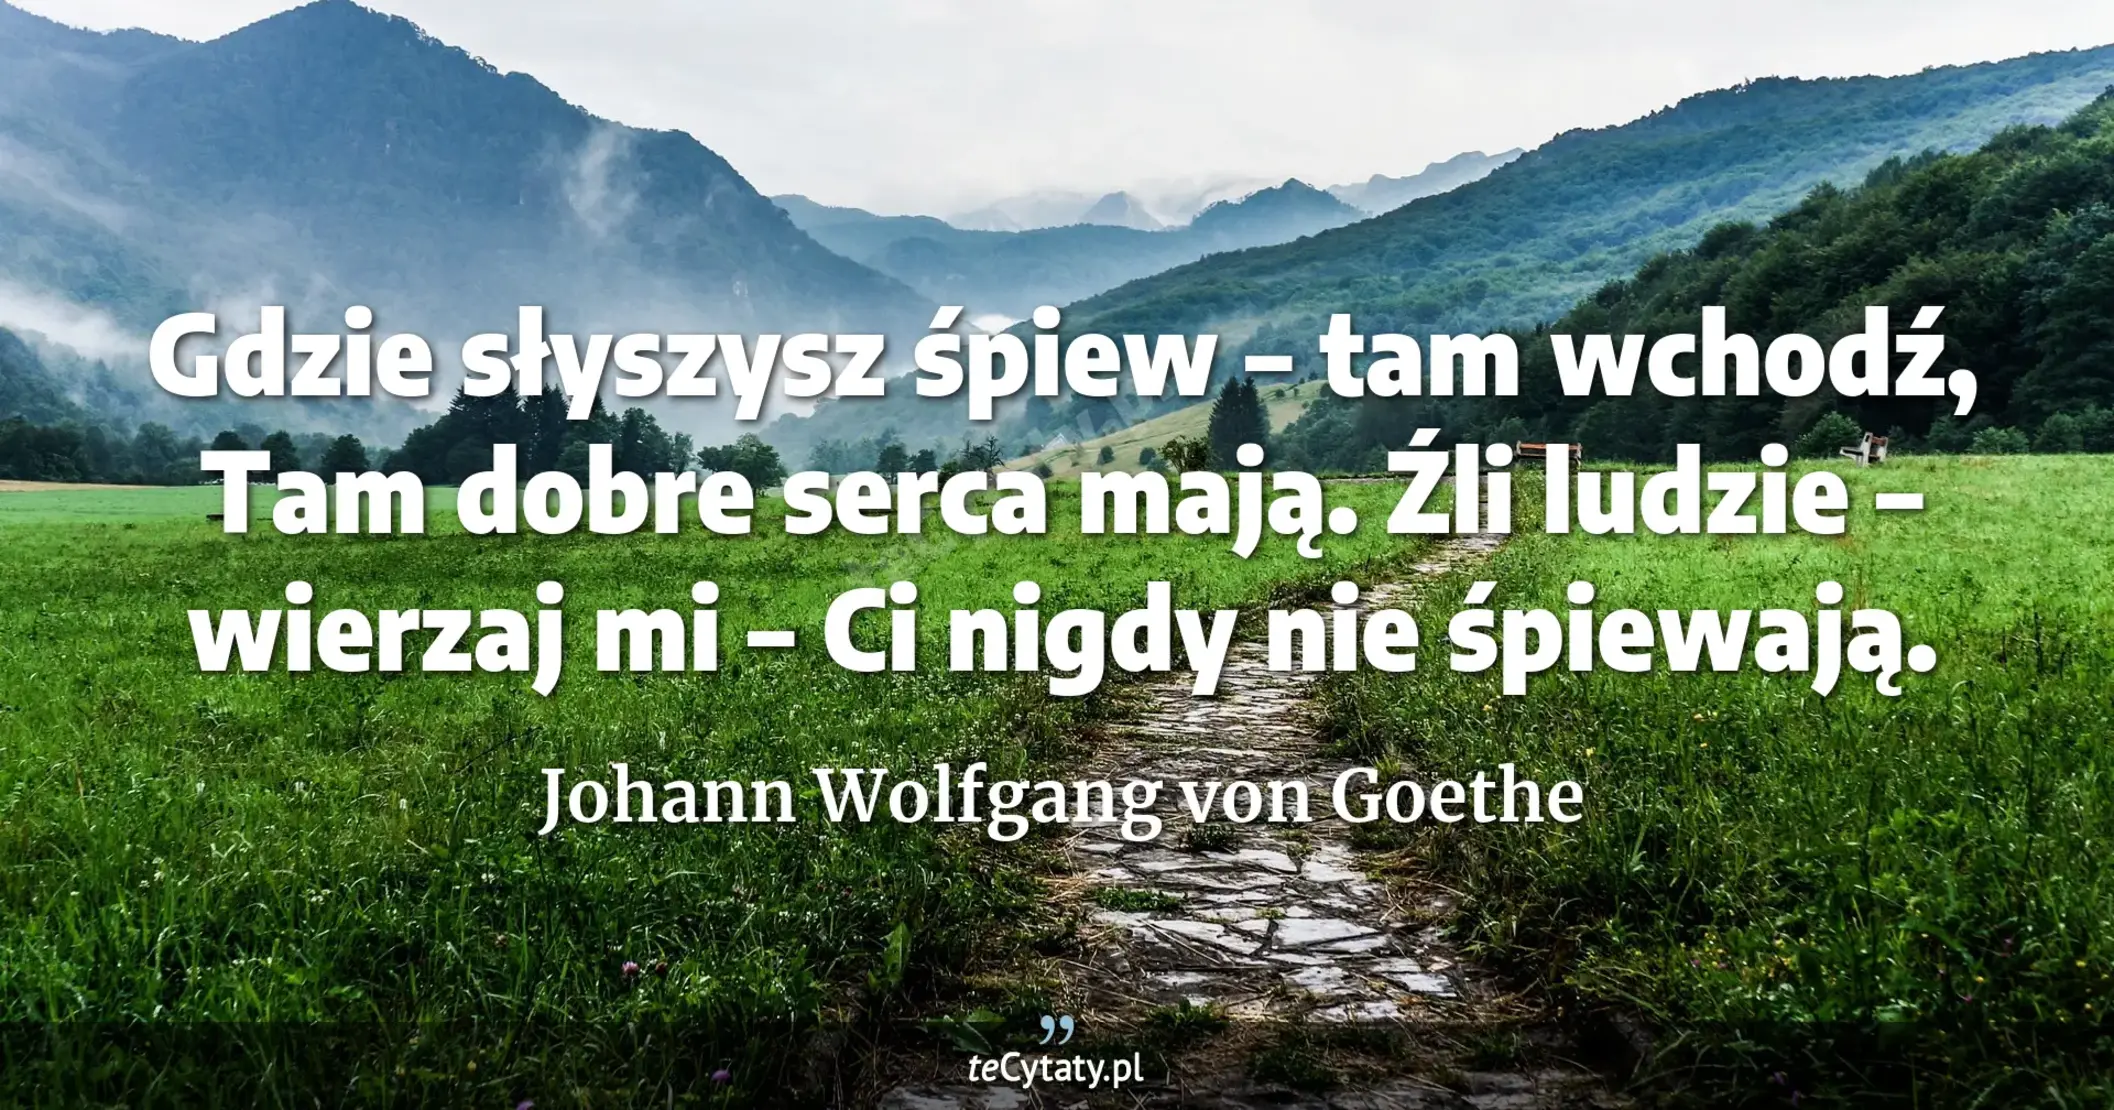 Gdzie słyszysz śpiew – tam wchodź, <br> Tam dobre serca mają. <br> Źli ludzie – wierzaj mi – <br> Ci nigdy nie śpiewają. - Johann Wolfgang von Goethe